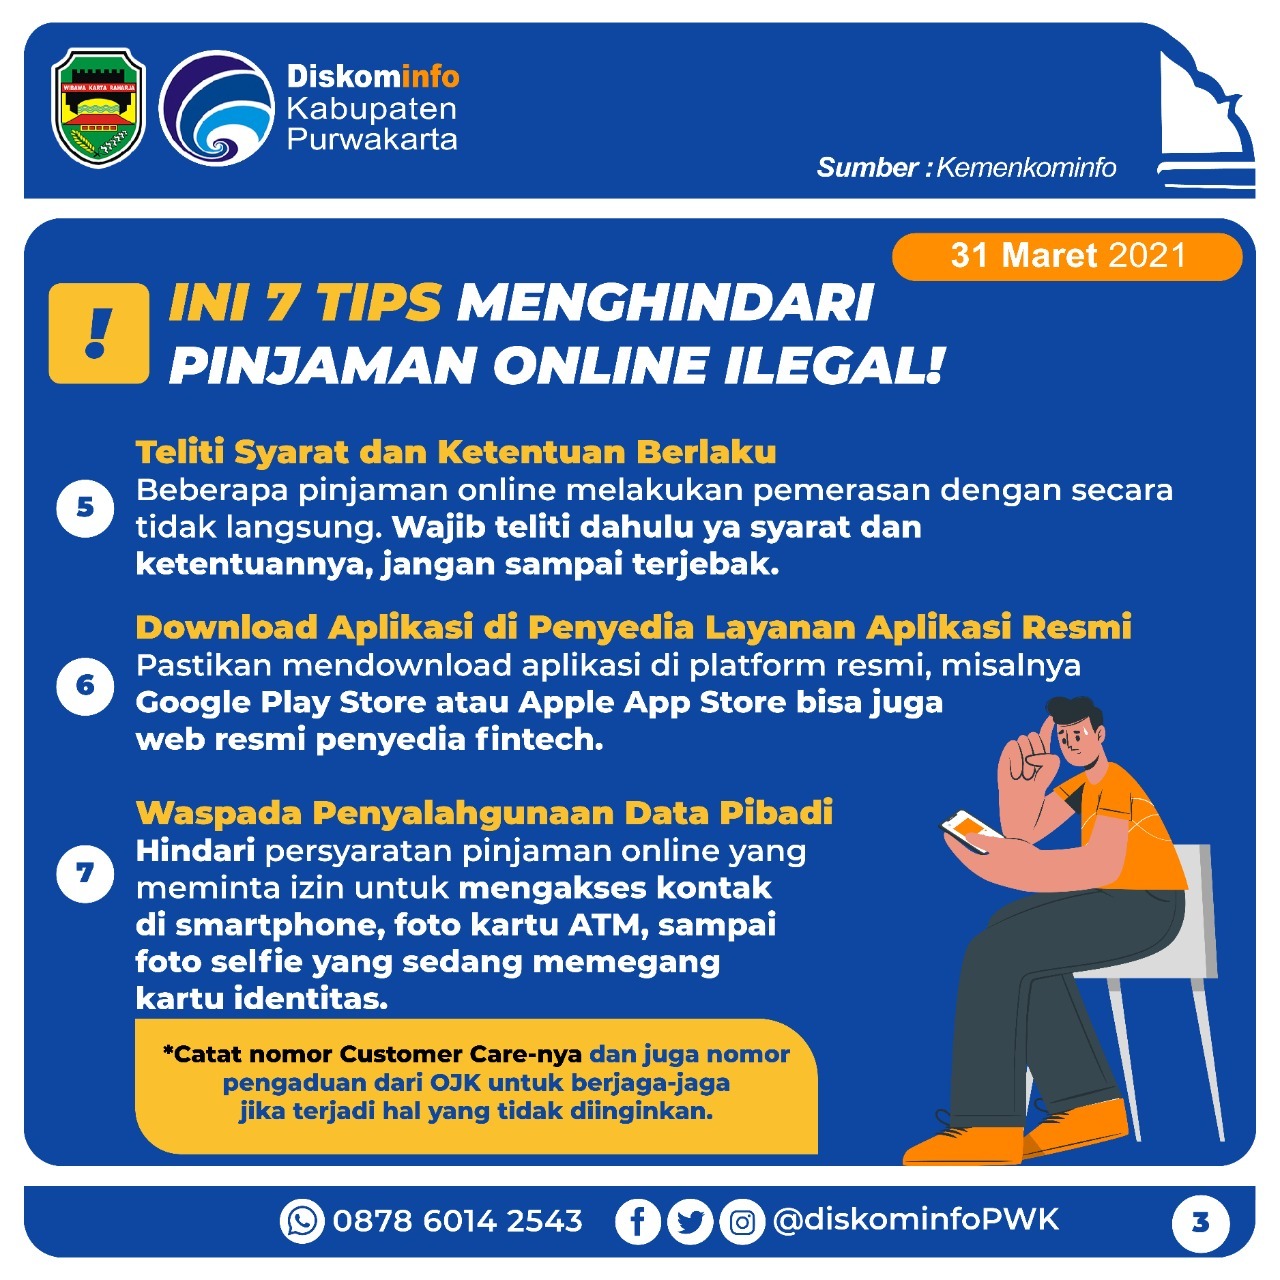 Tips Menghindari Pinjaman Online Ilegal